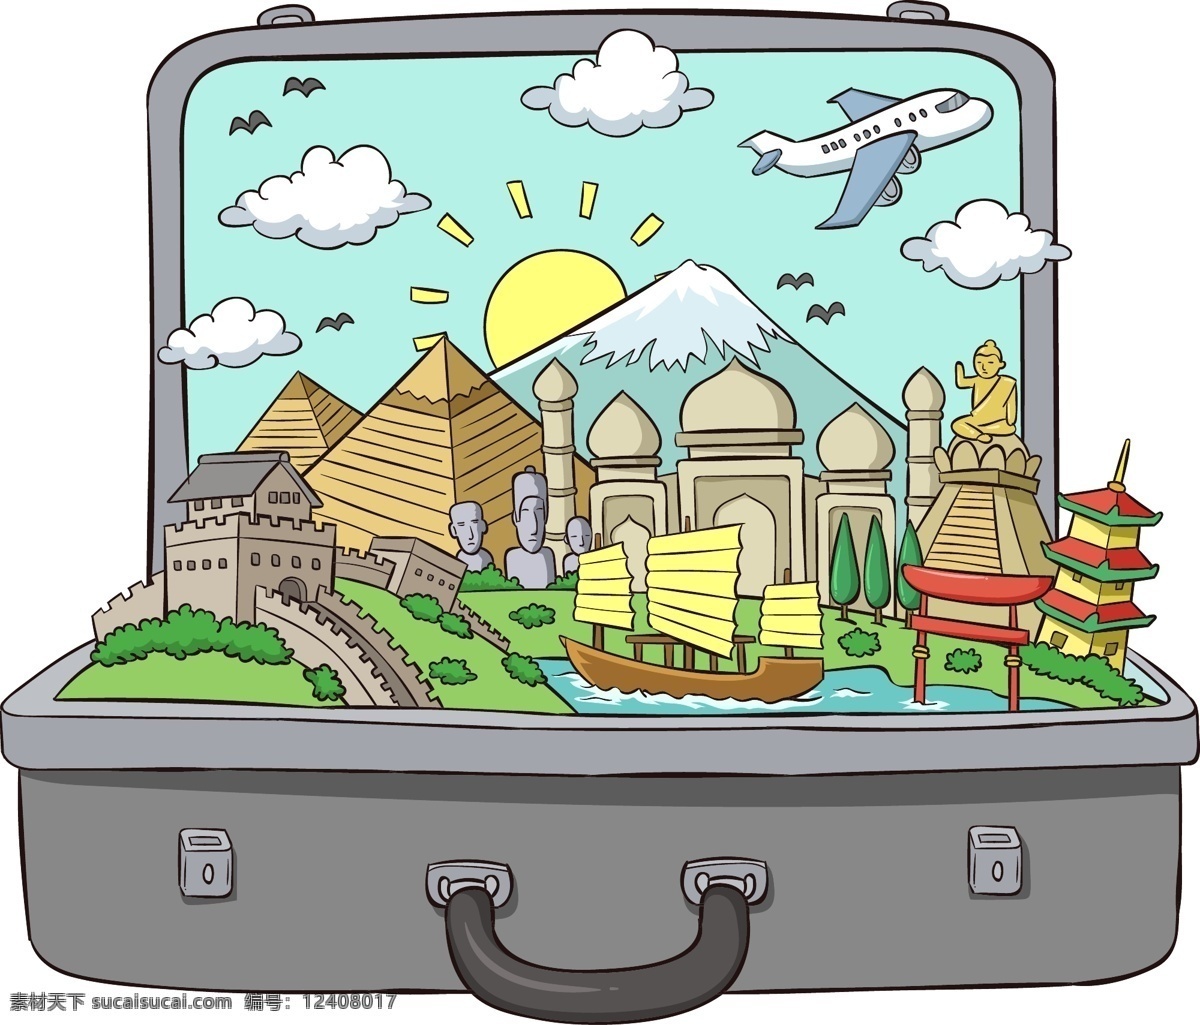 行李箱 里 旅游风景 创意 旅游 世界 著名景点 卡通 简约